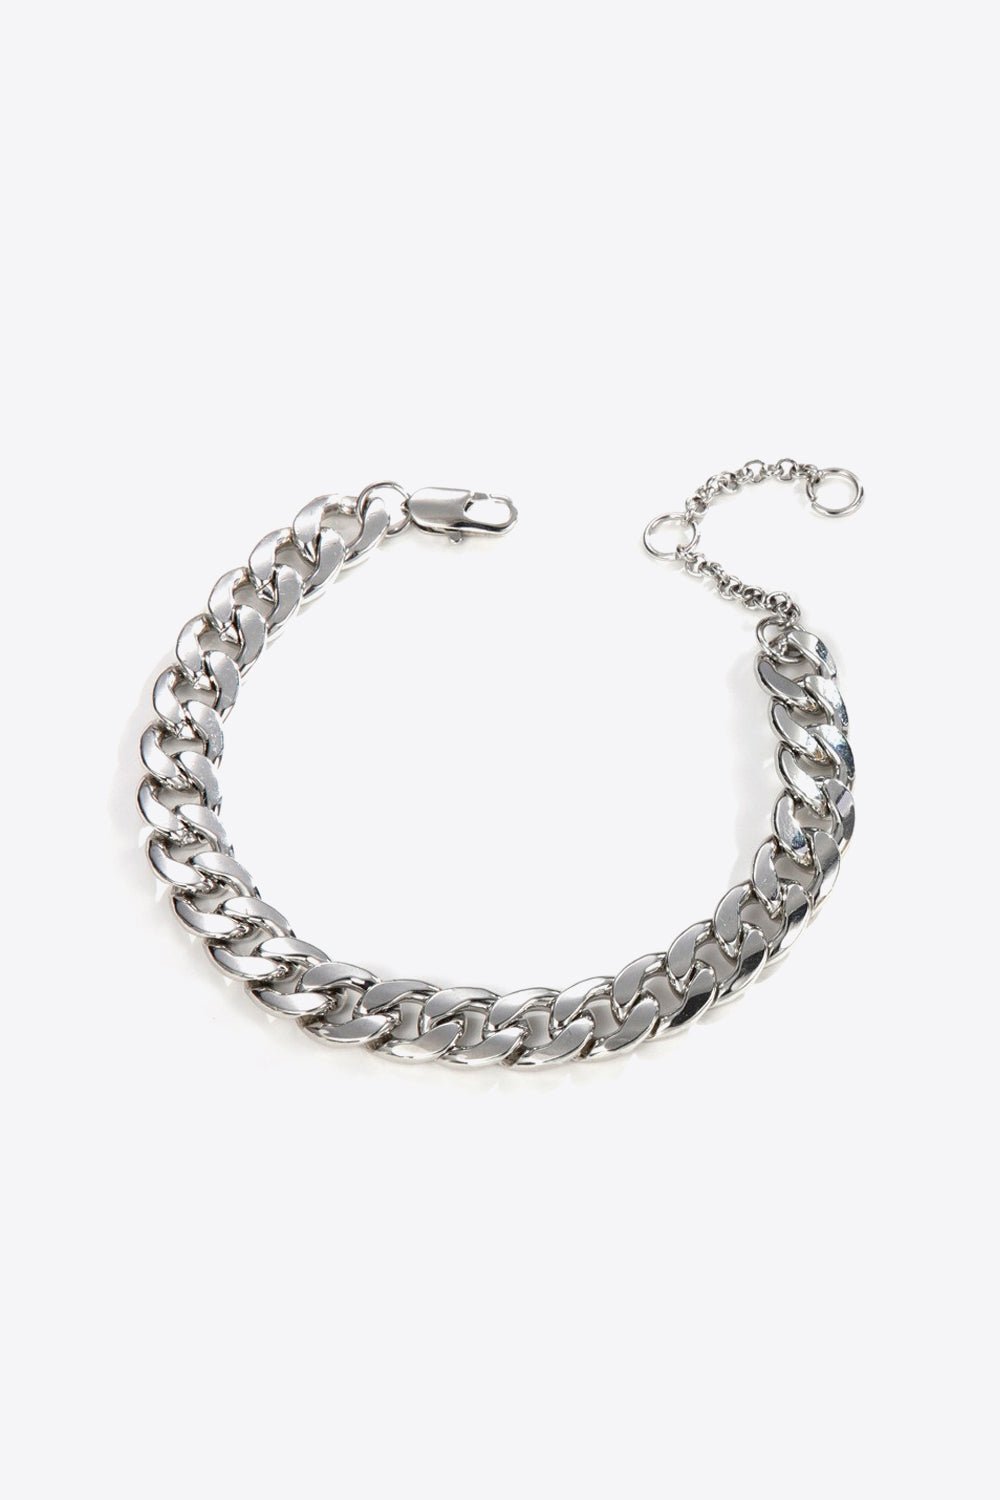 Chunky Chain Bracelet - Shah S. Sahota